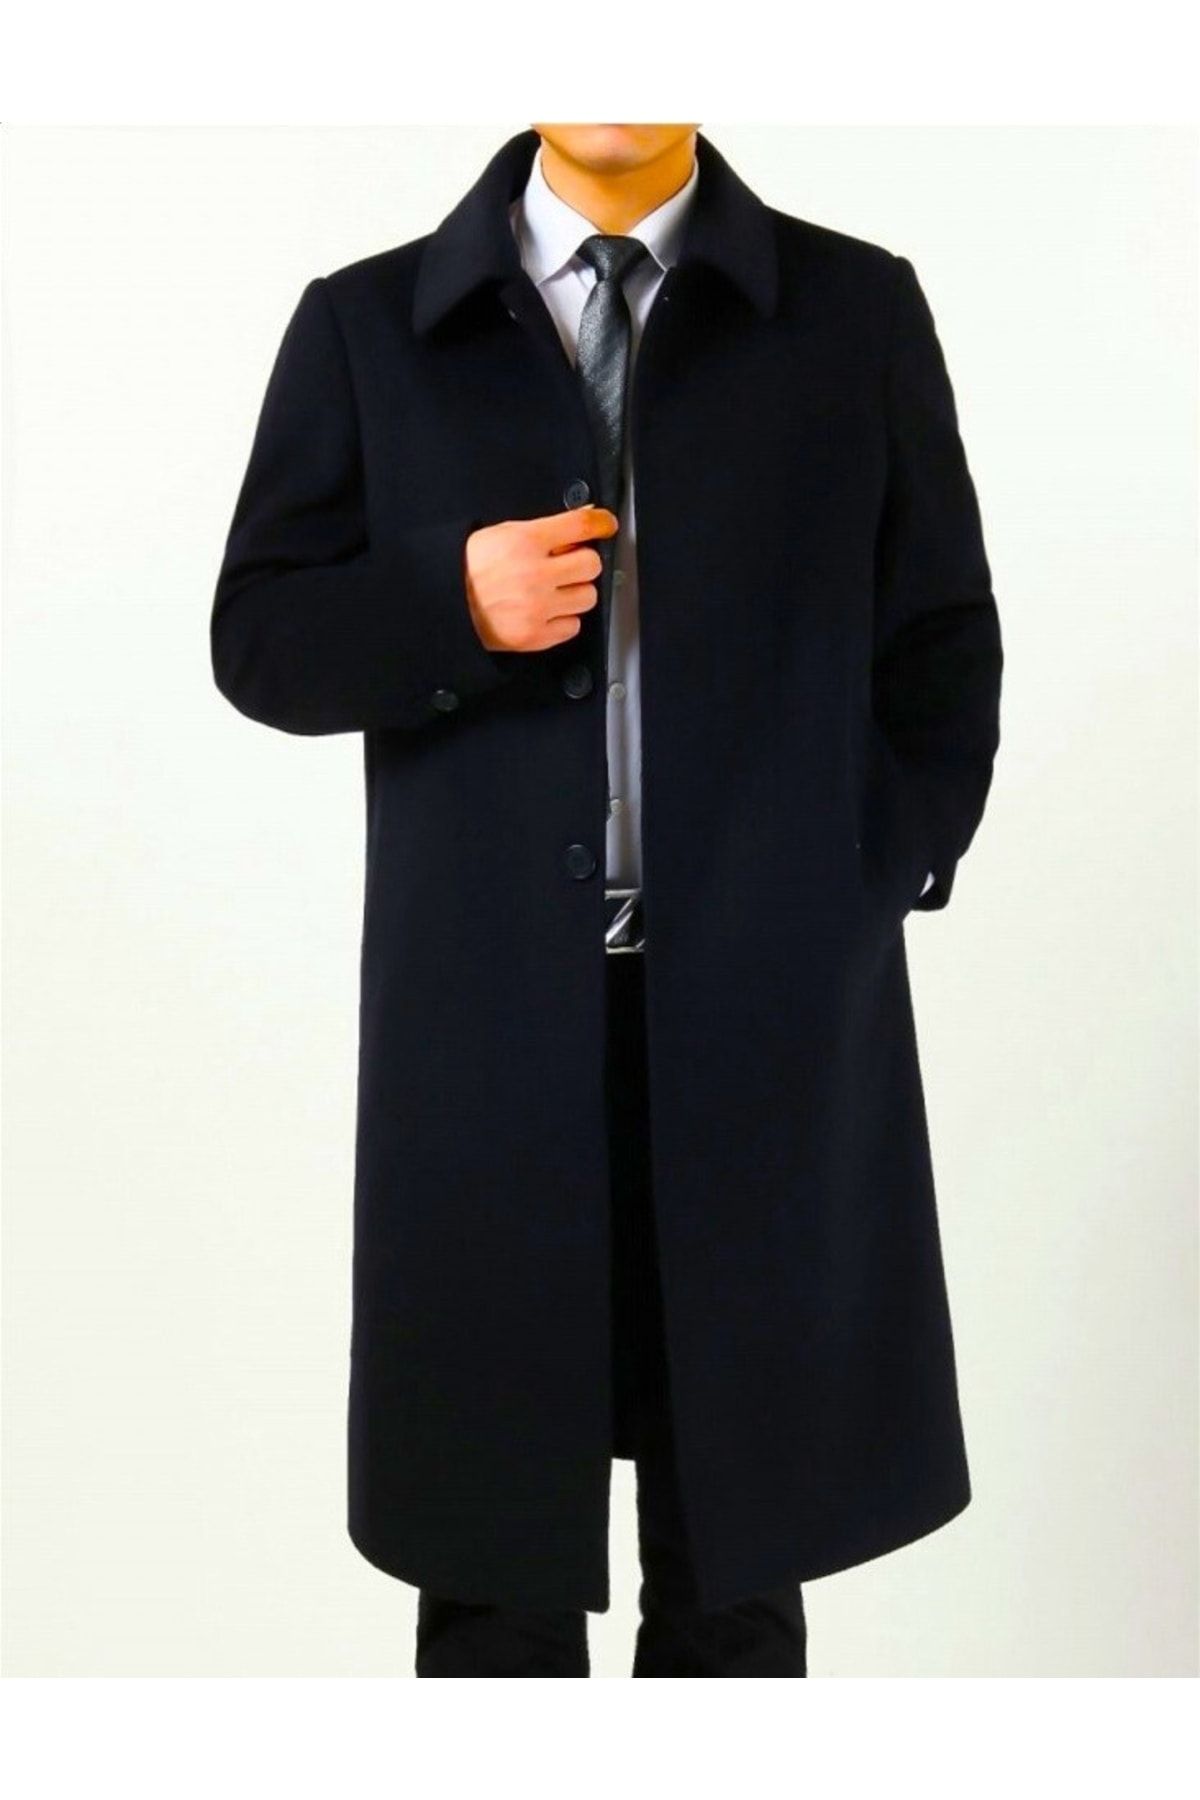 Мужское пальто ниже колена. Pierre Cardin пальто мужское кашемировое. Кашемировое пальто мужское длинное осень-зима. Мужское пальто черное кашемировое пальто. Пальто мужское черное длинное.